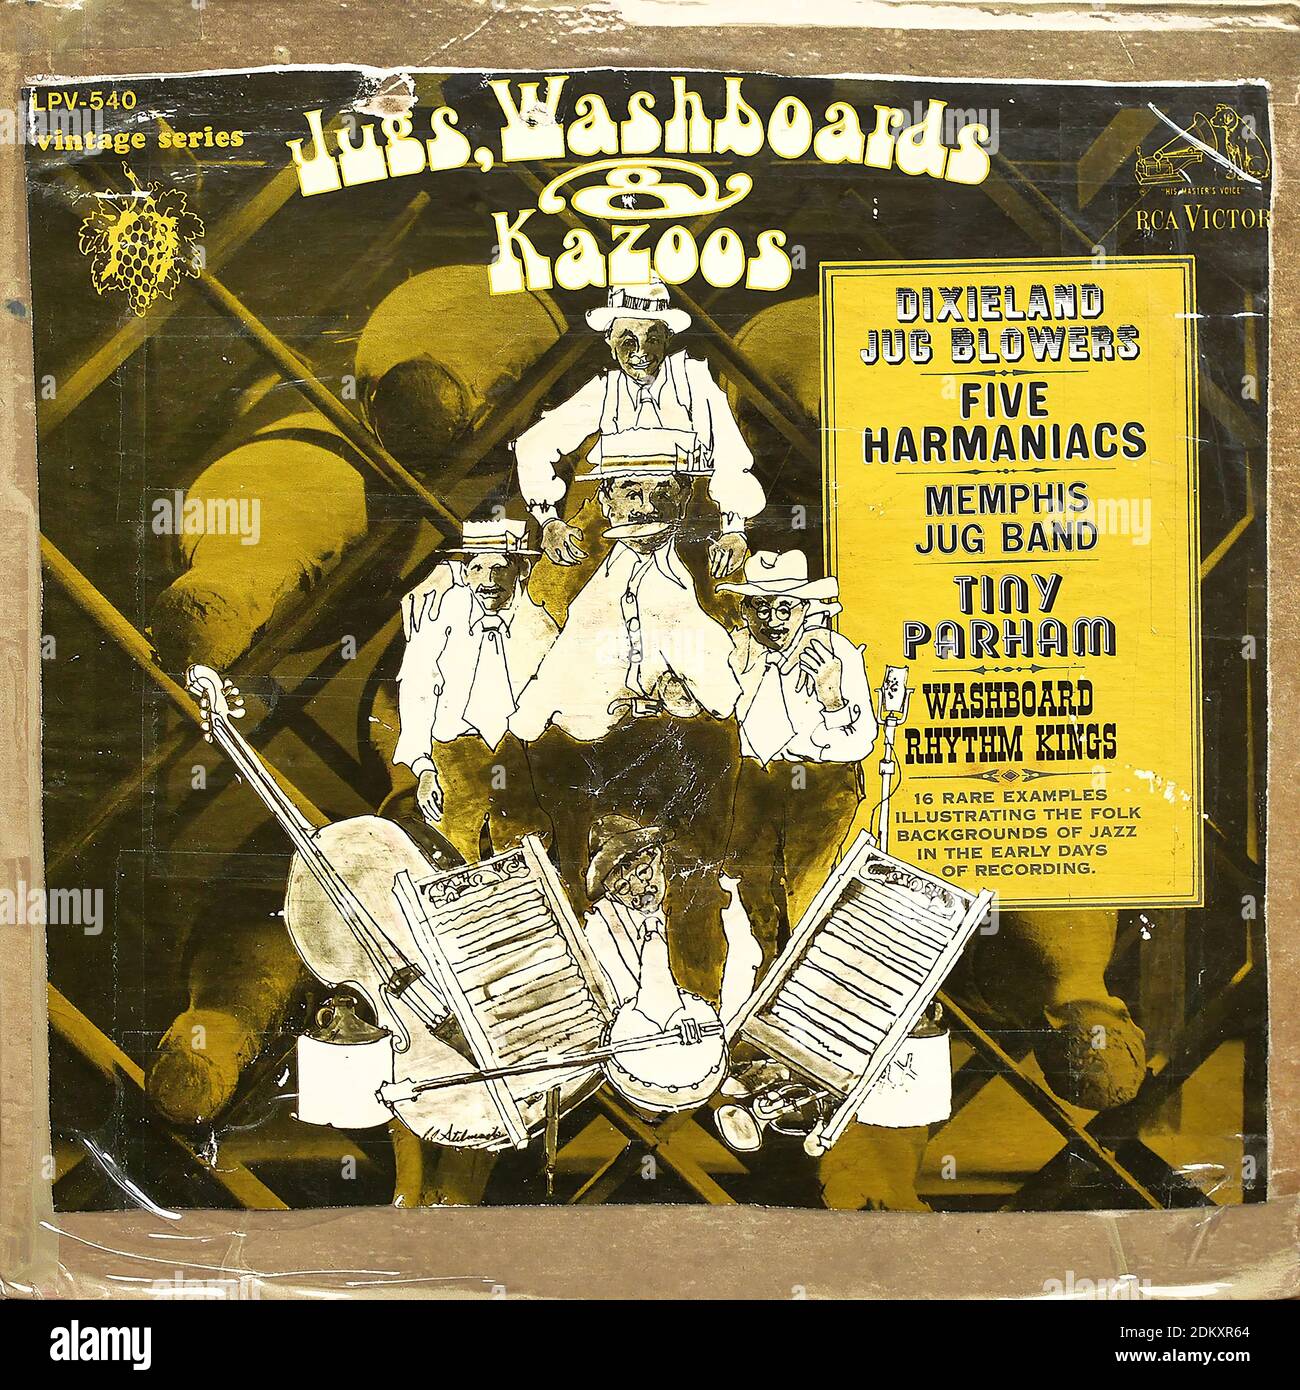 Kannen, Waschbretter und Kazoos, RCA Victor LPV-540, 1967 - Vintage Vinyl Album Cover Stockfoto